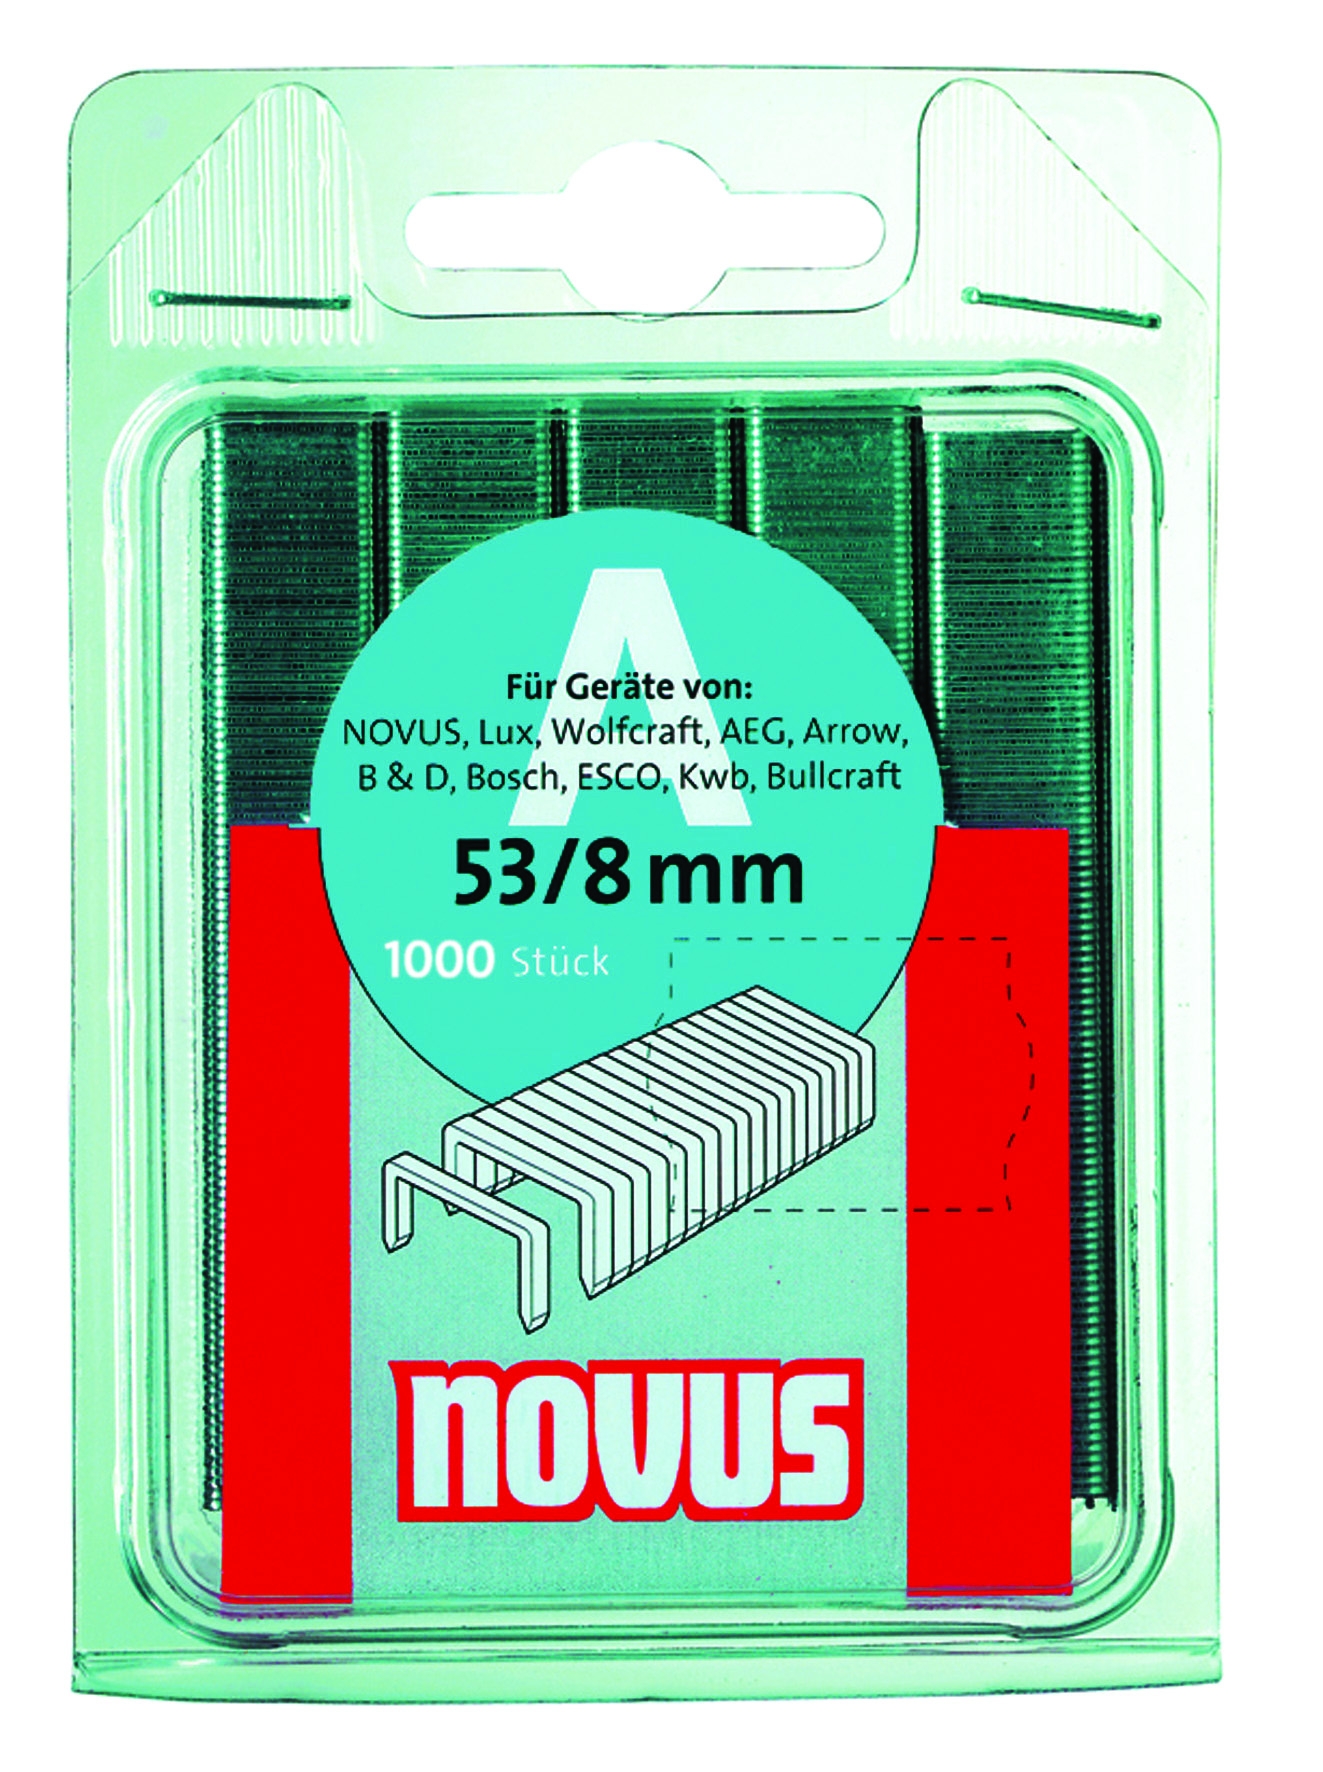 Novus dundraad nieten type A 1000 stuks 10 mm